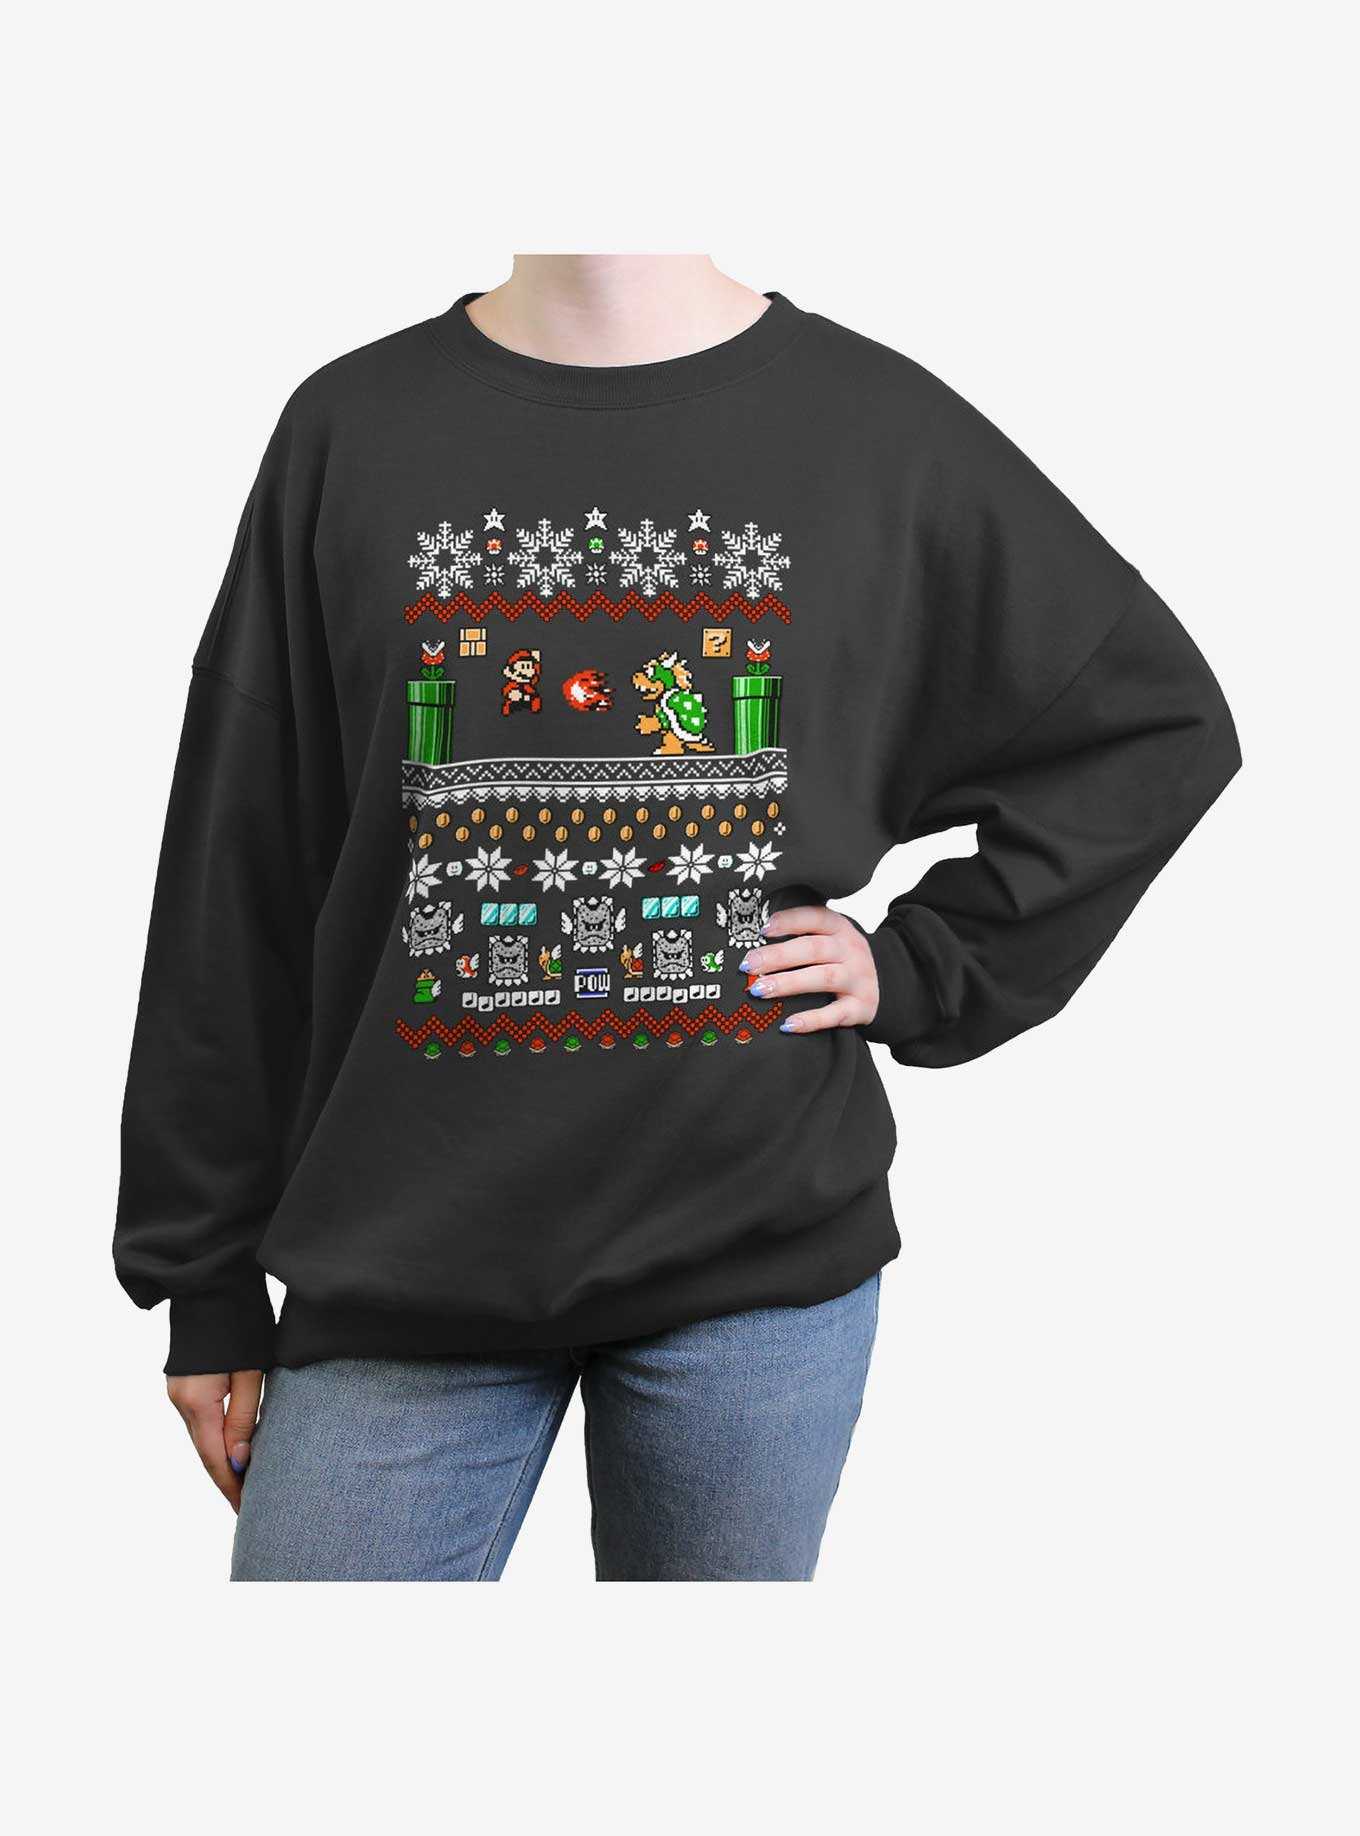 Nintendo Mario Game Ugly Christmas Girls Oversized Sweatshirt, , hi-res